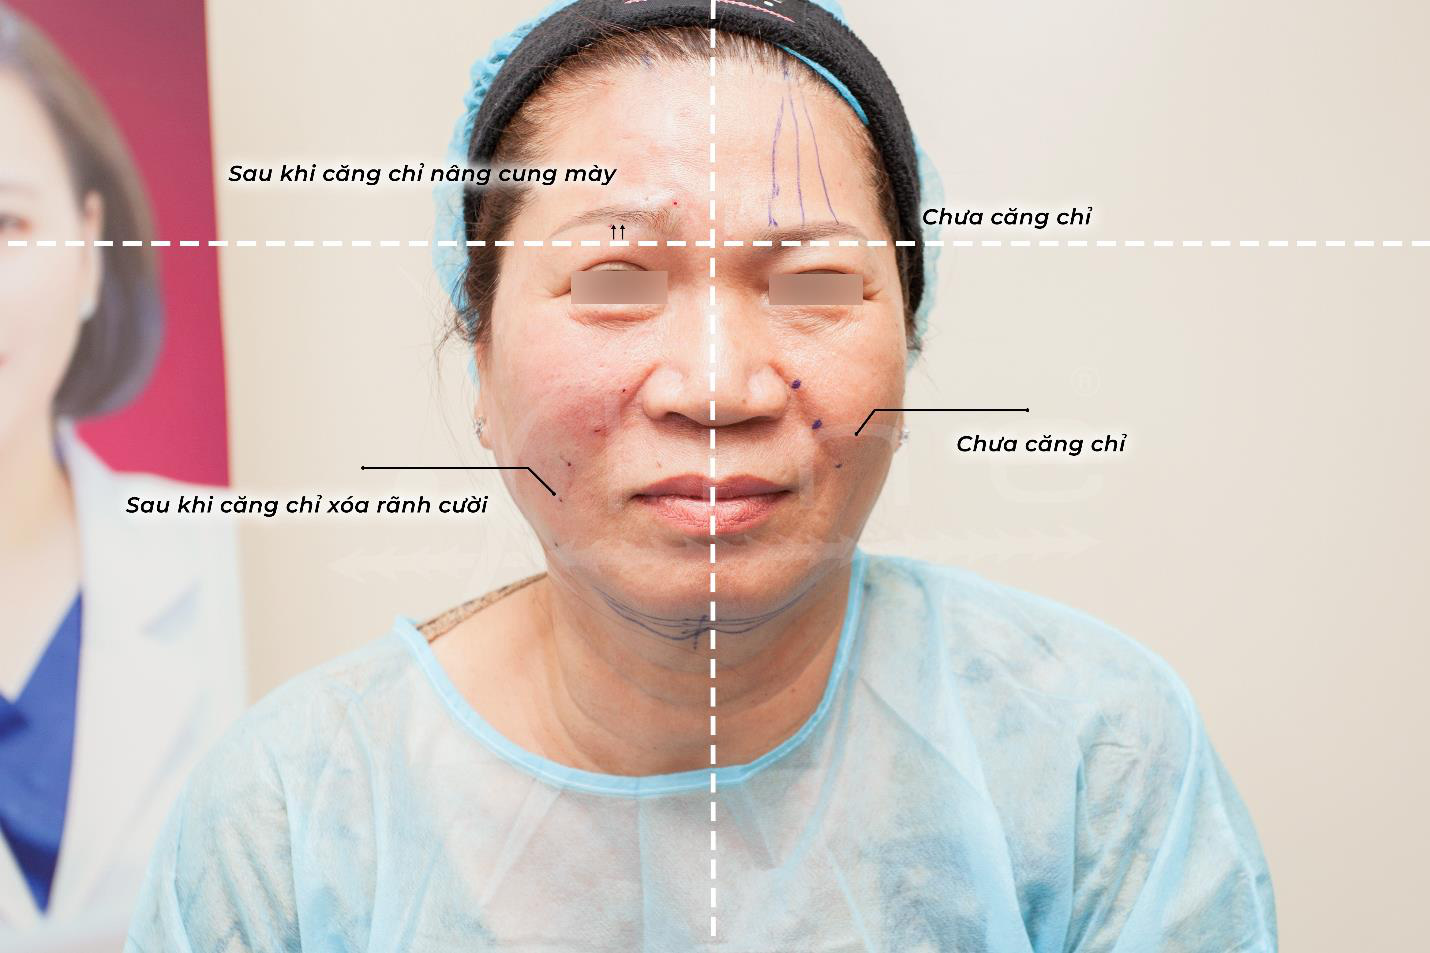 Bác sĩ Nguyễn Phương Thảo giải đáp những điều cần biết về căng da bằng chỉ-1